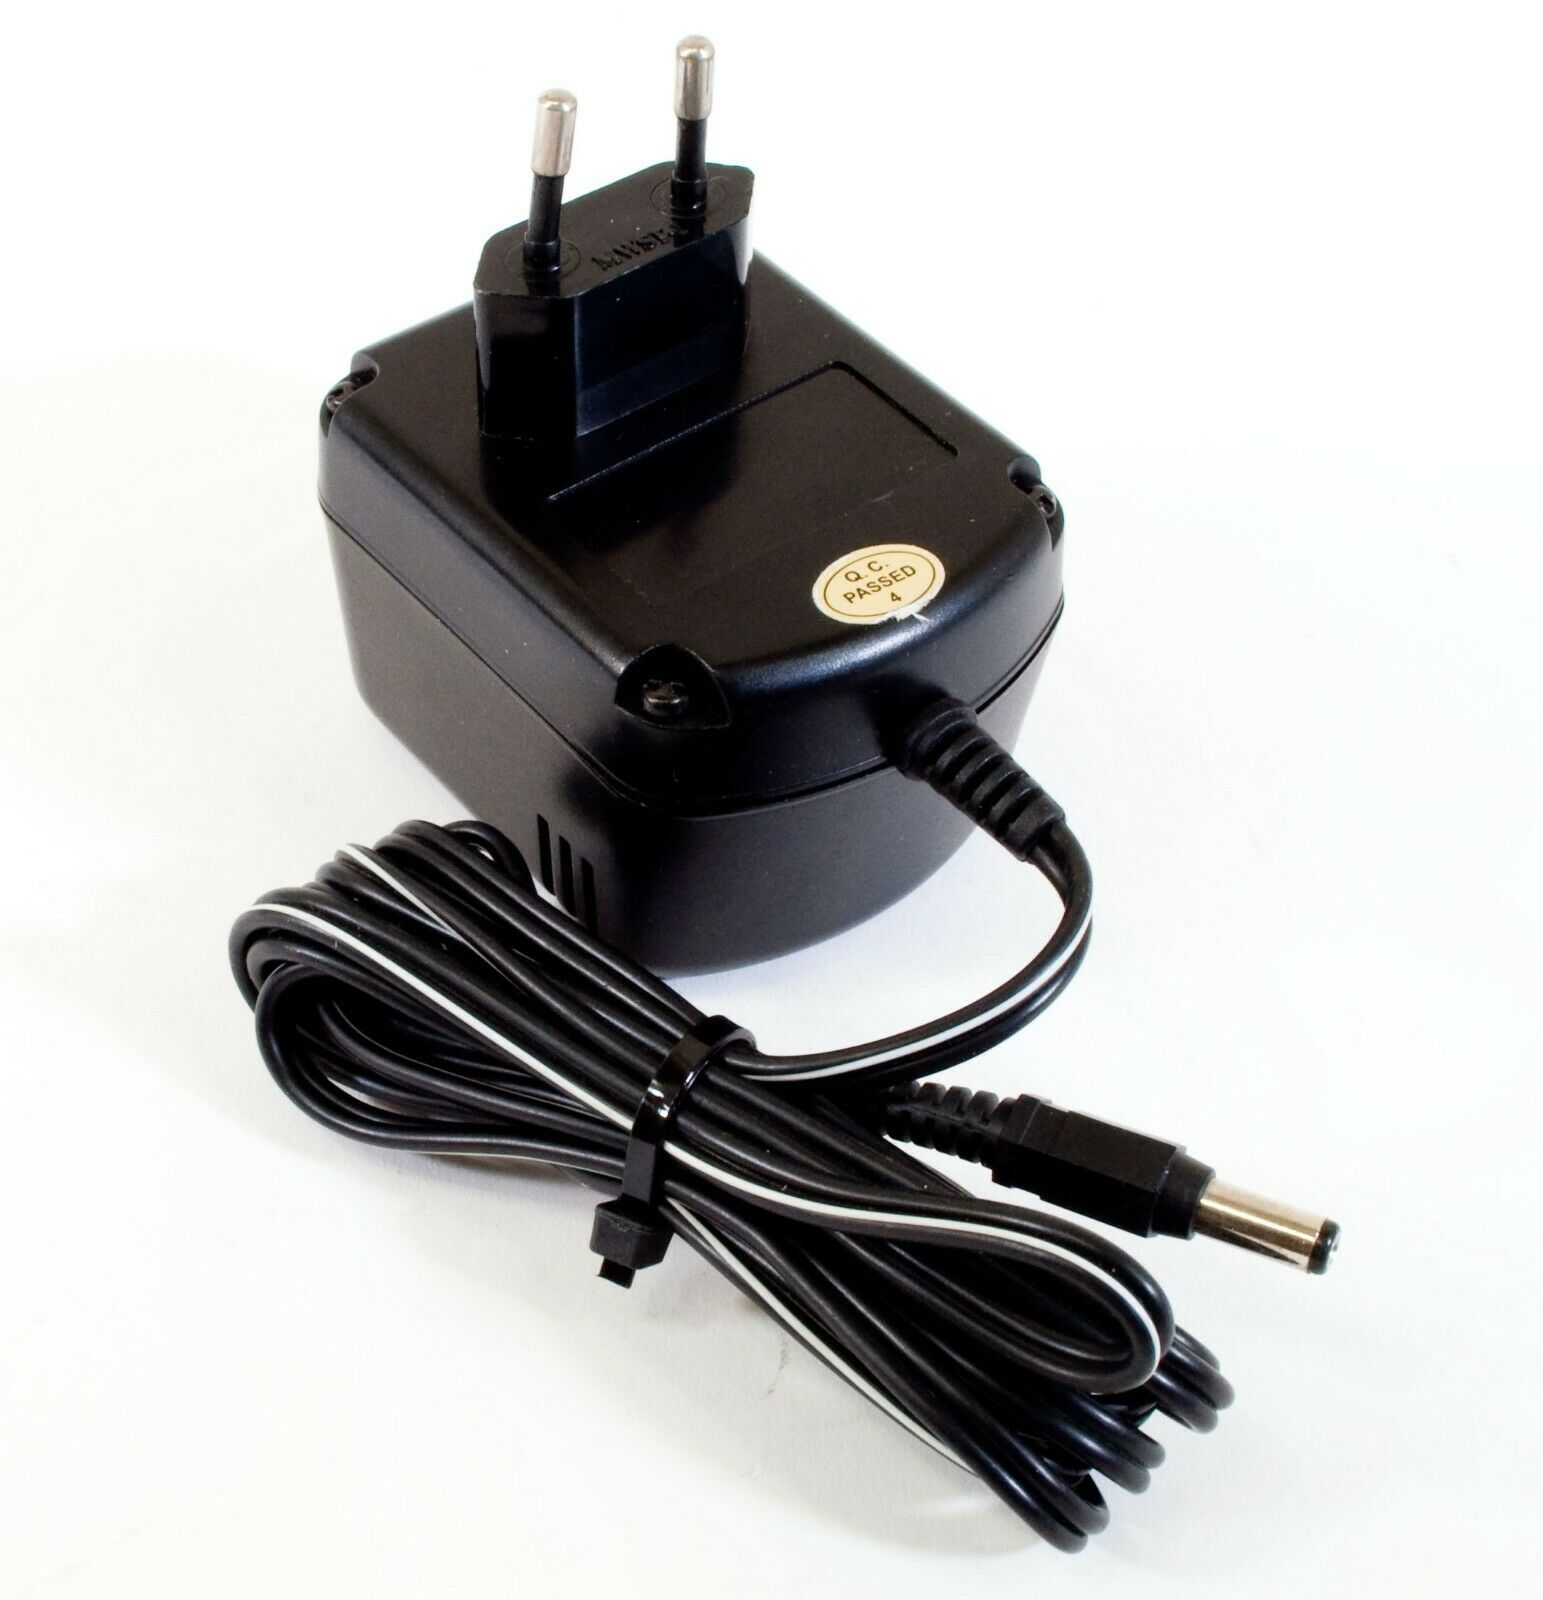 Bontempi AD177-10 AC Adapter 12V 1000mA Original Power Supply Europlug Output Current: 1000 mA Voltage: 12 V MPN: MK1 - Click Image to Close